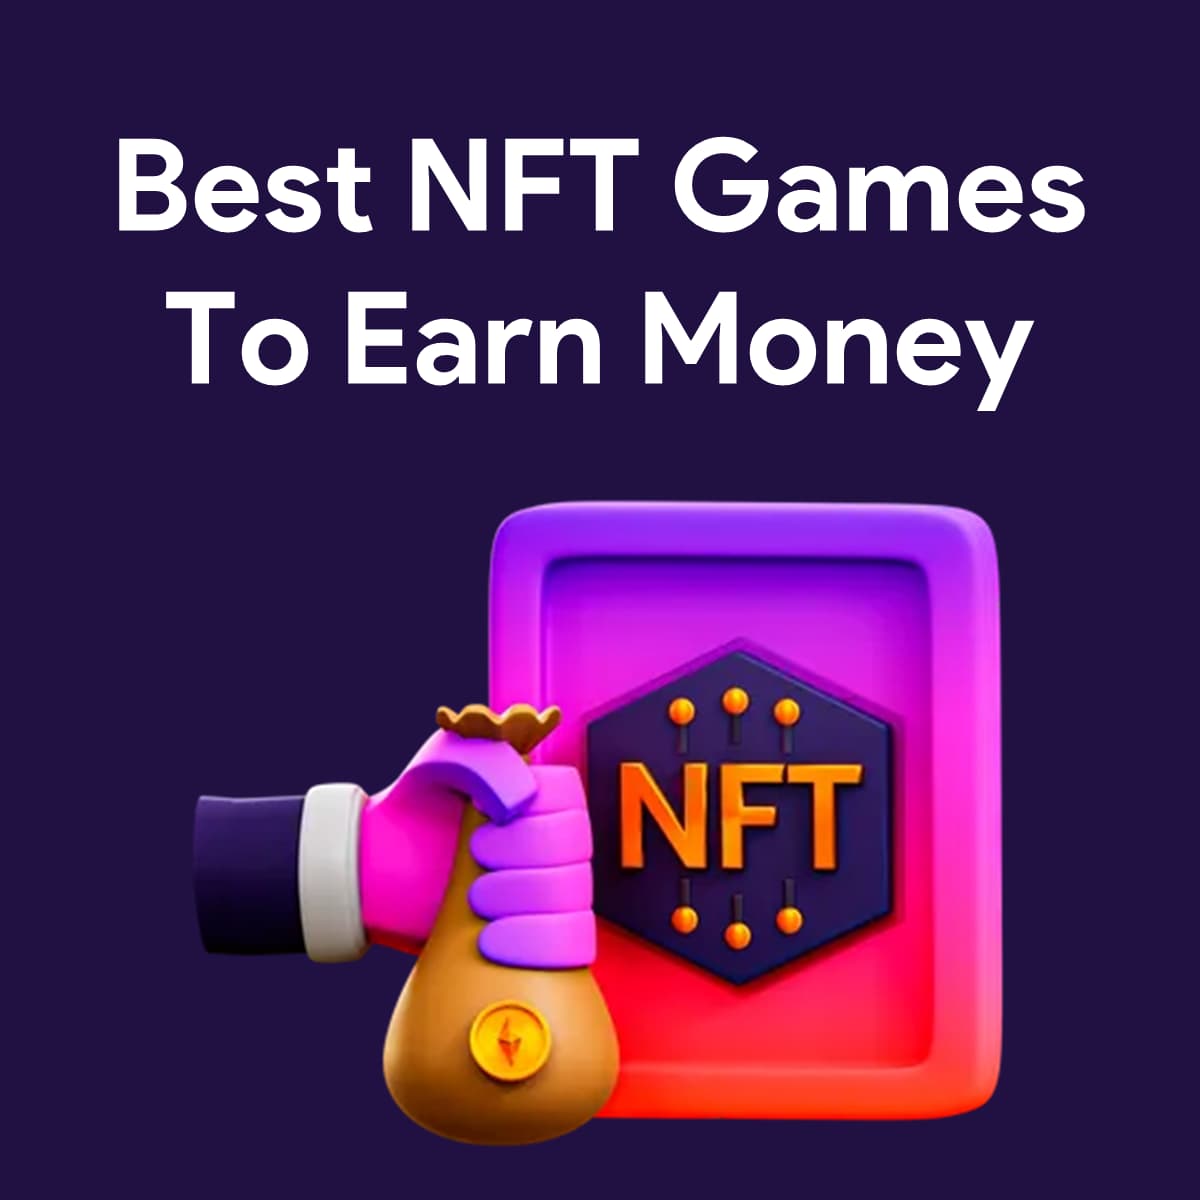 Best NFT Games To Make Money